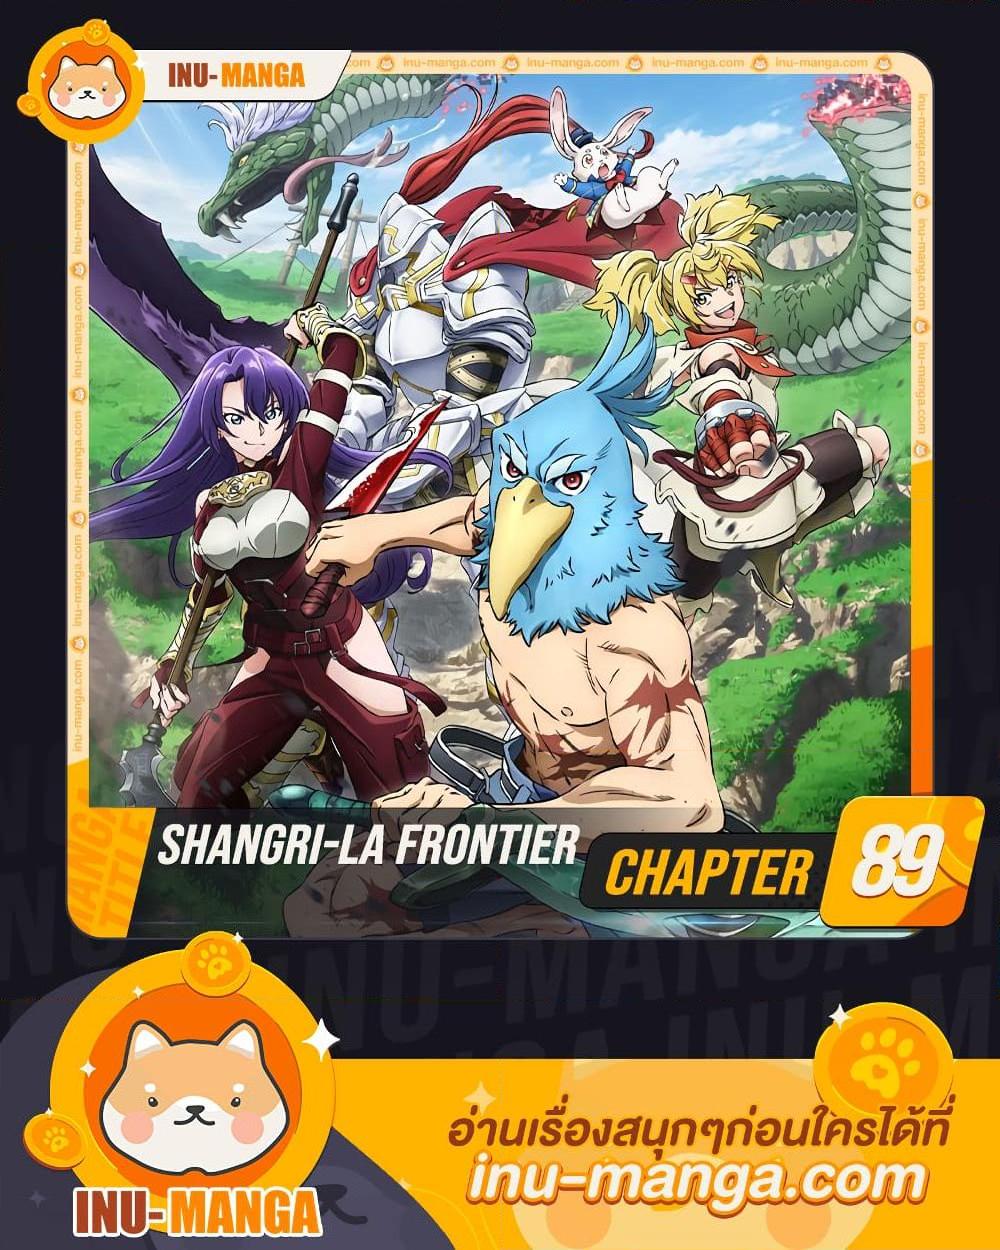 Shangri La Frontier 89 01